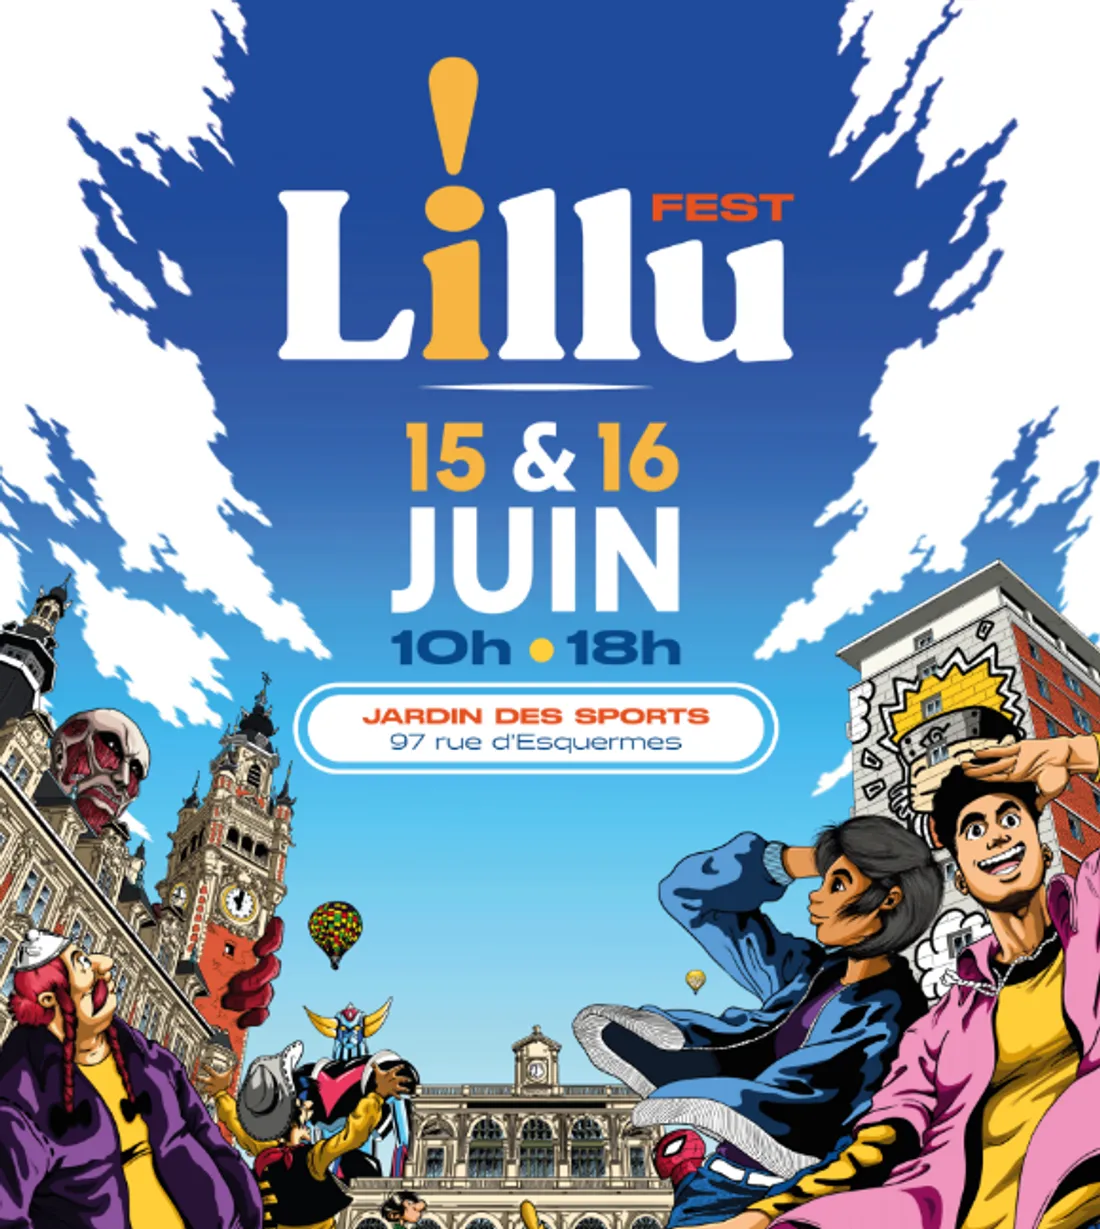 Première édition du Lillu Fest ce week-end à Lille